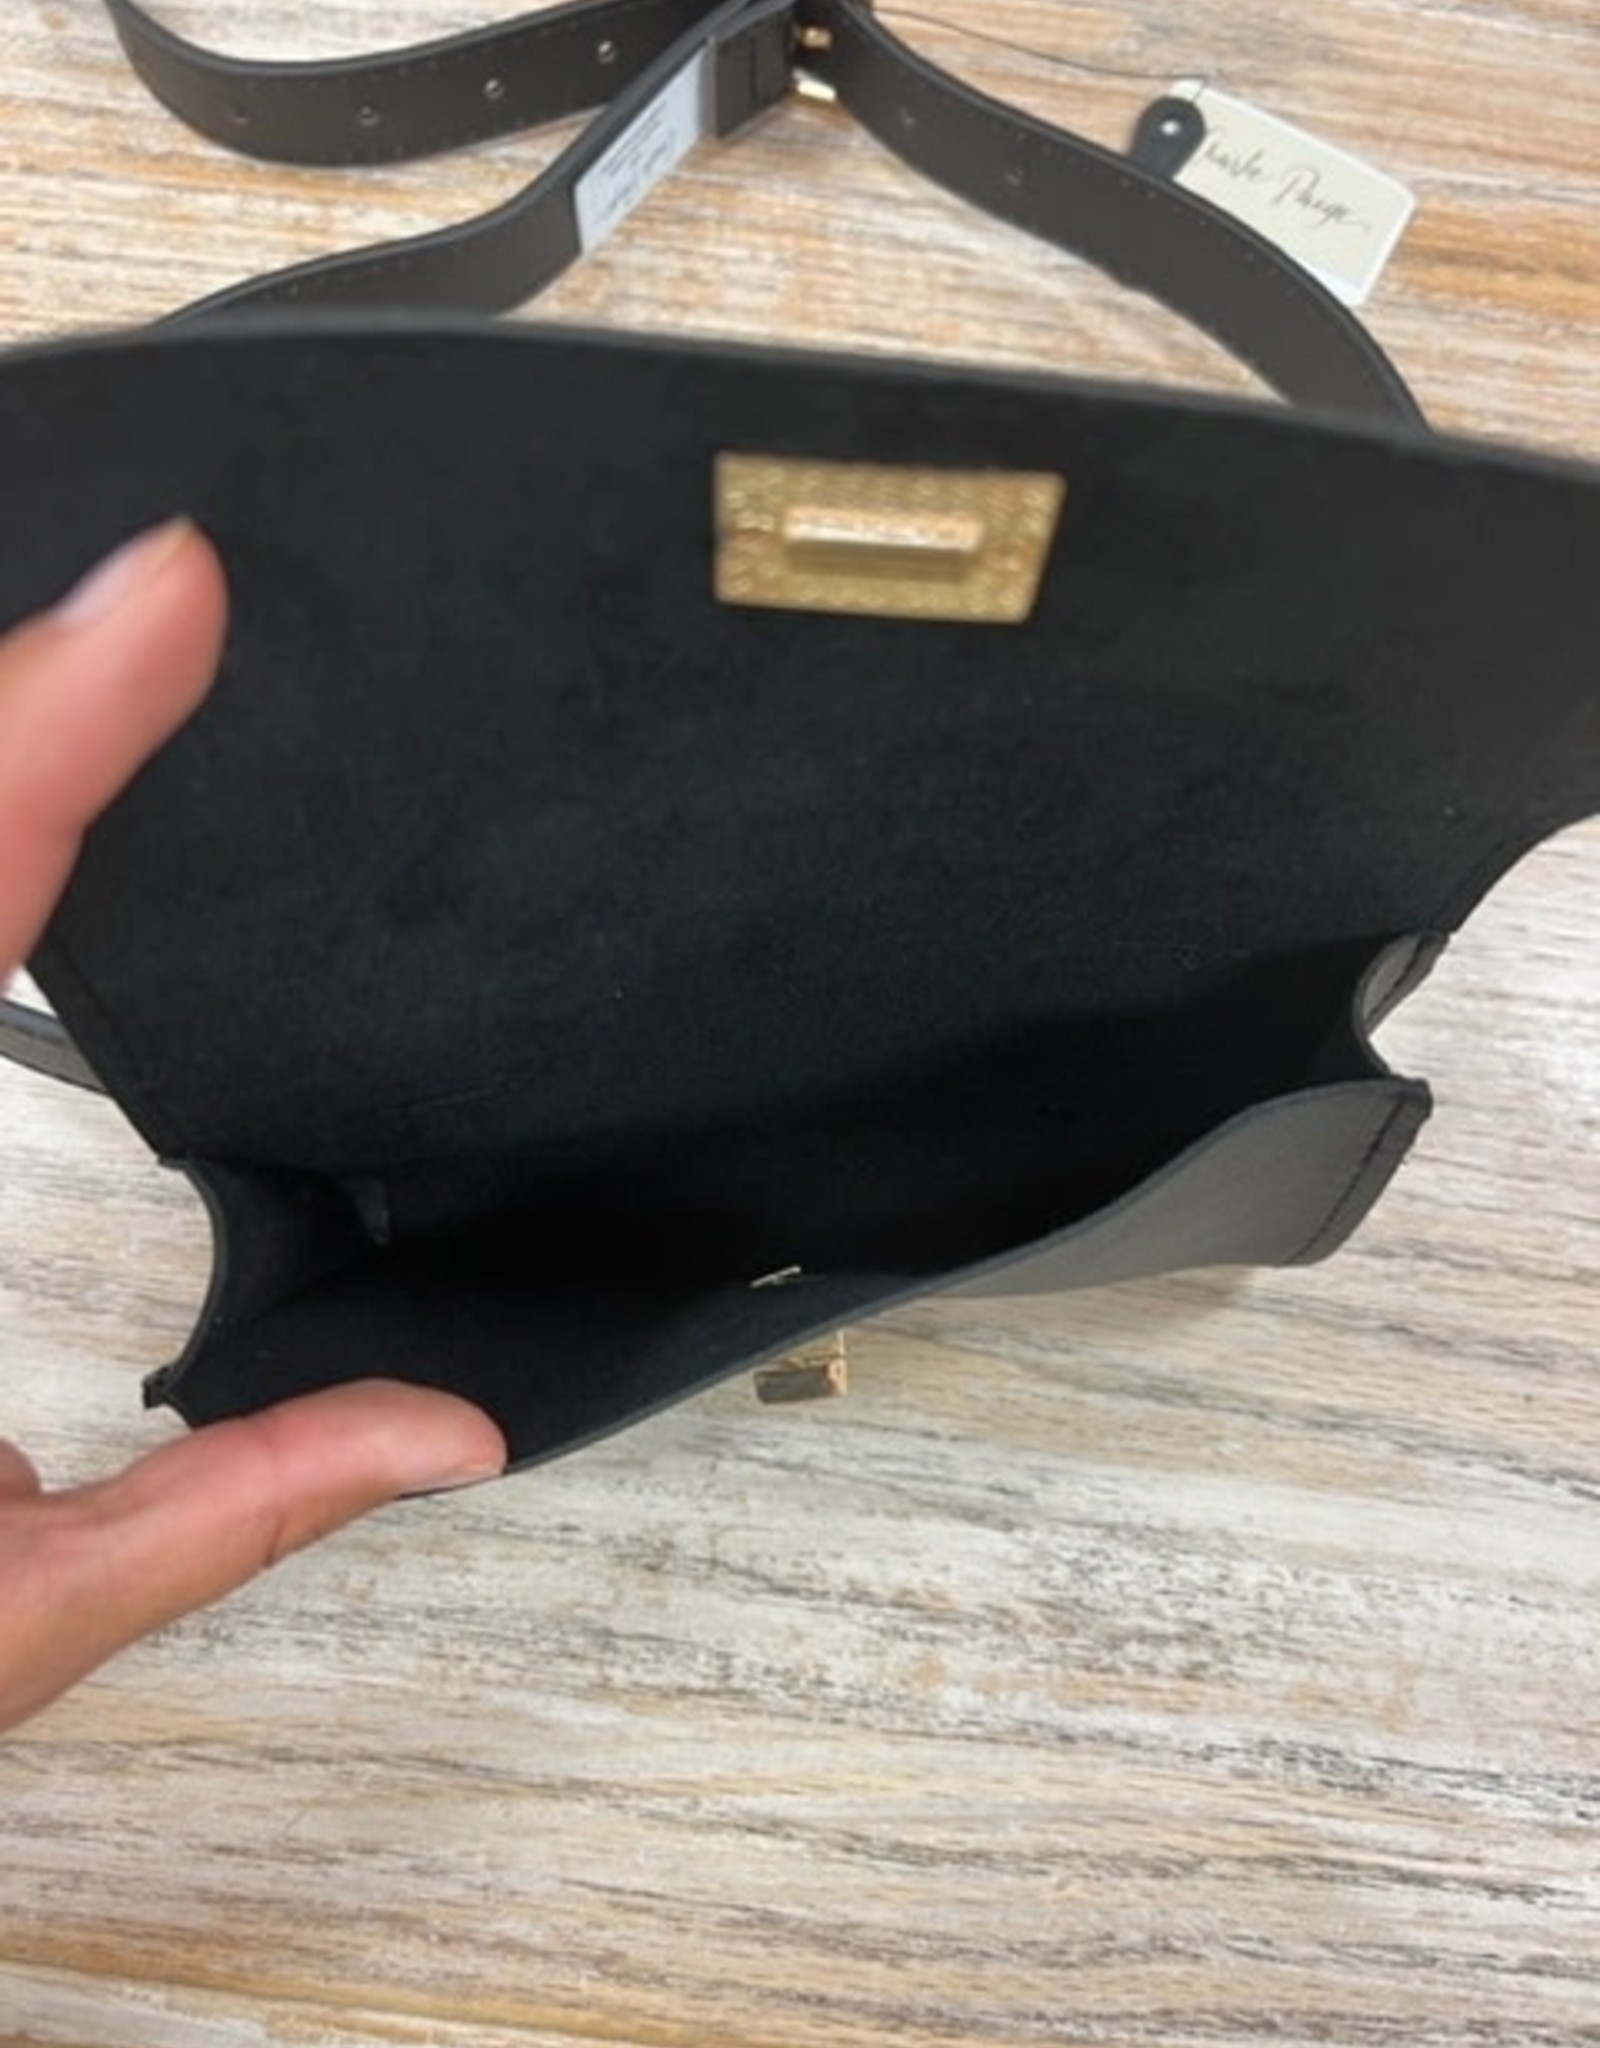 Bag Black Adjustable Belt Fanny Pack